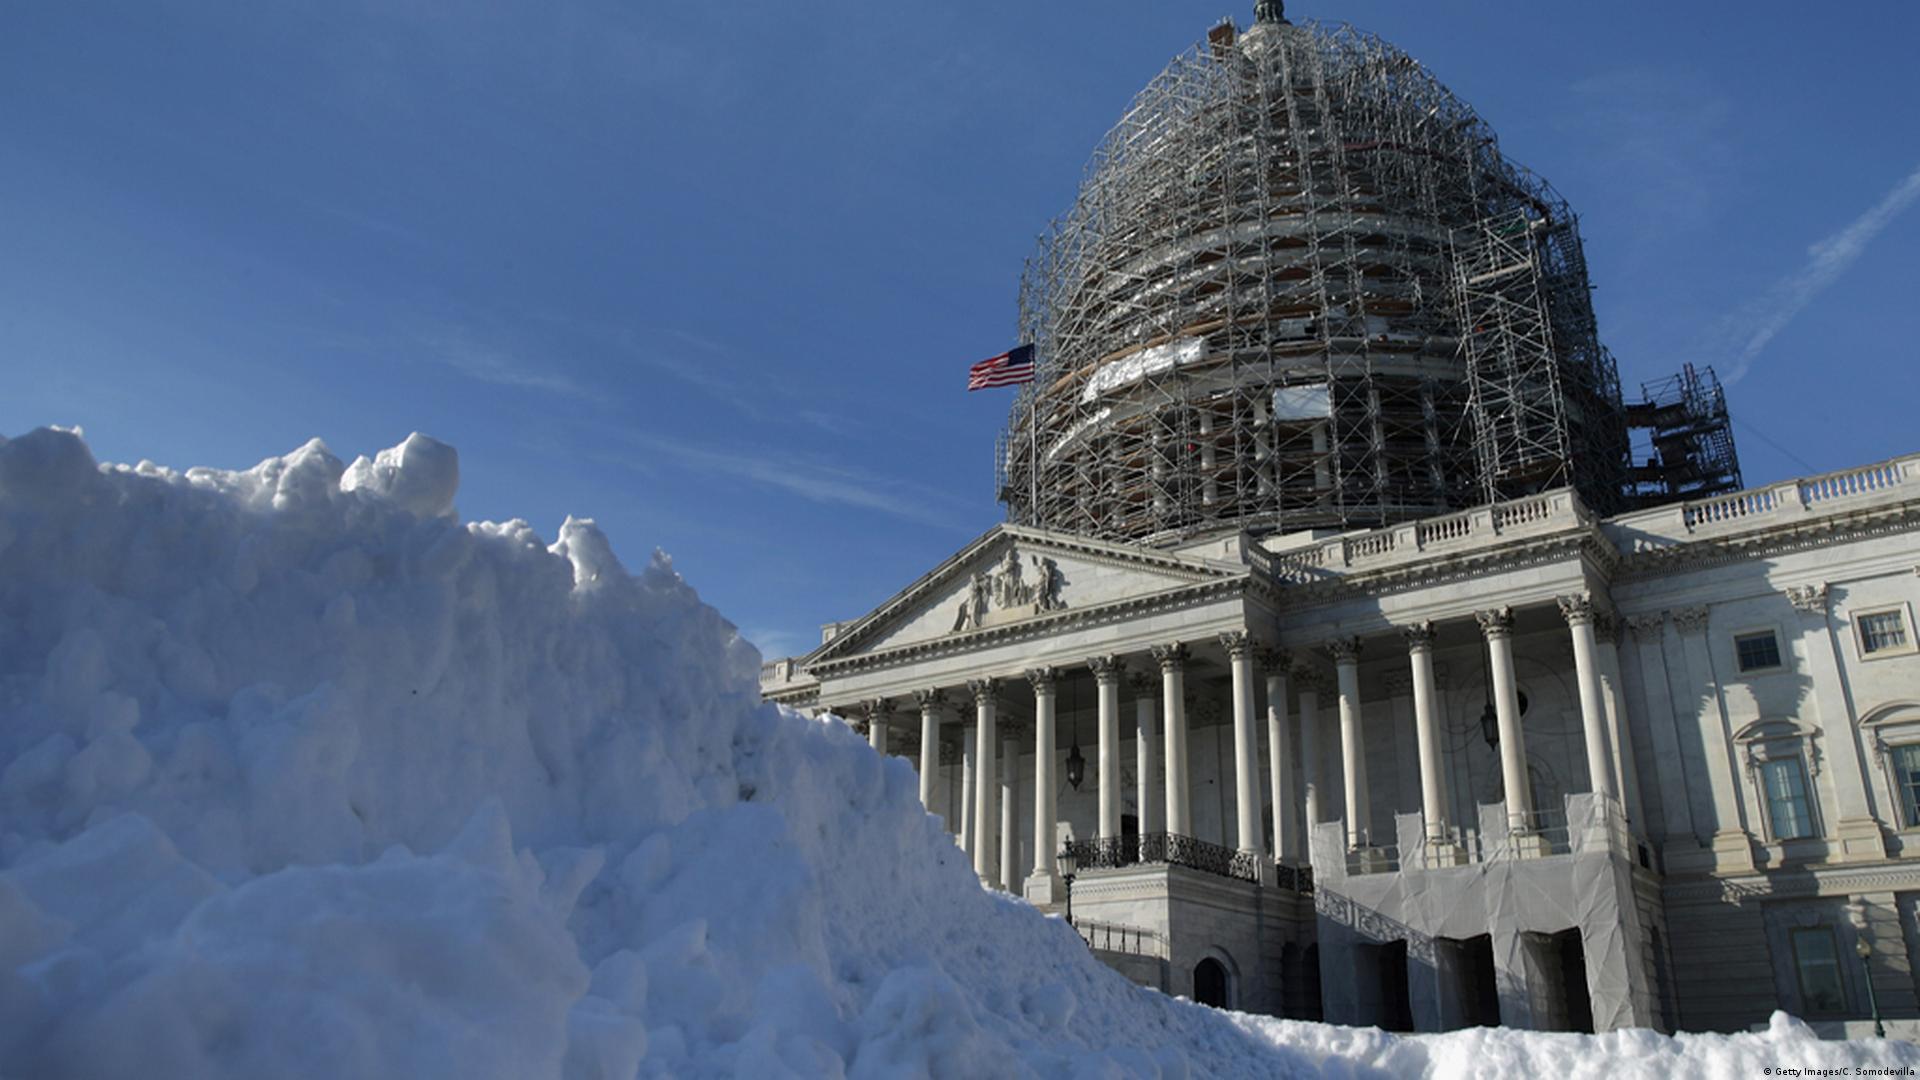 Washington zittert vor dem großen Schnee – DW – 23.01.2016